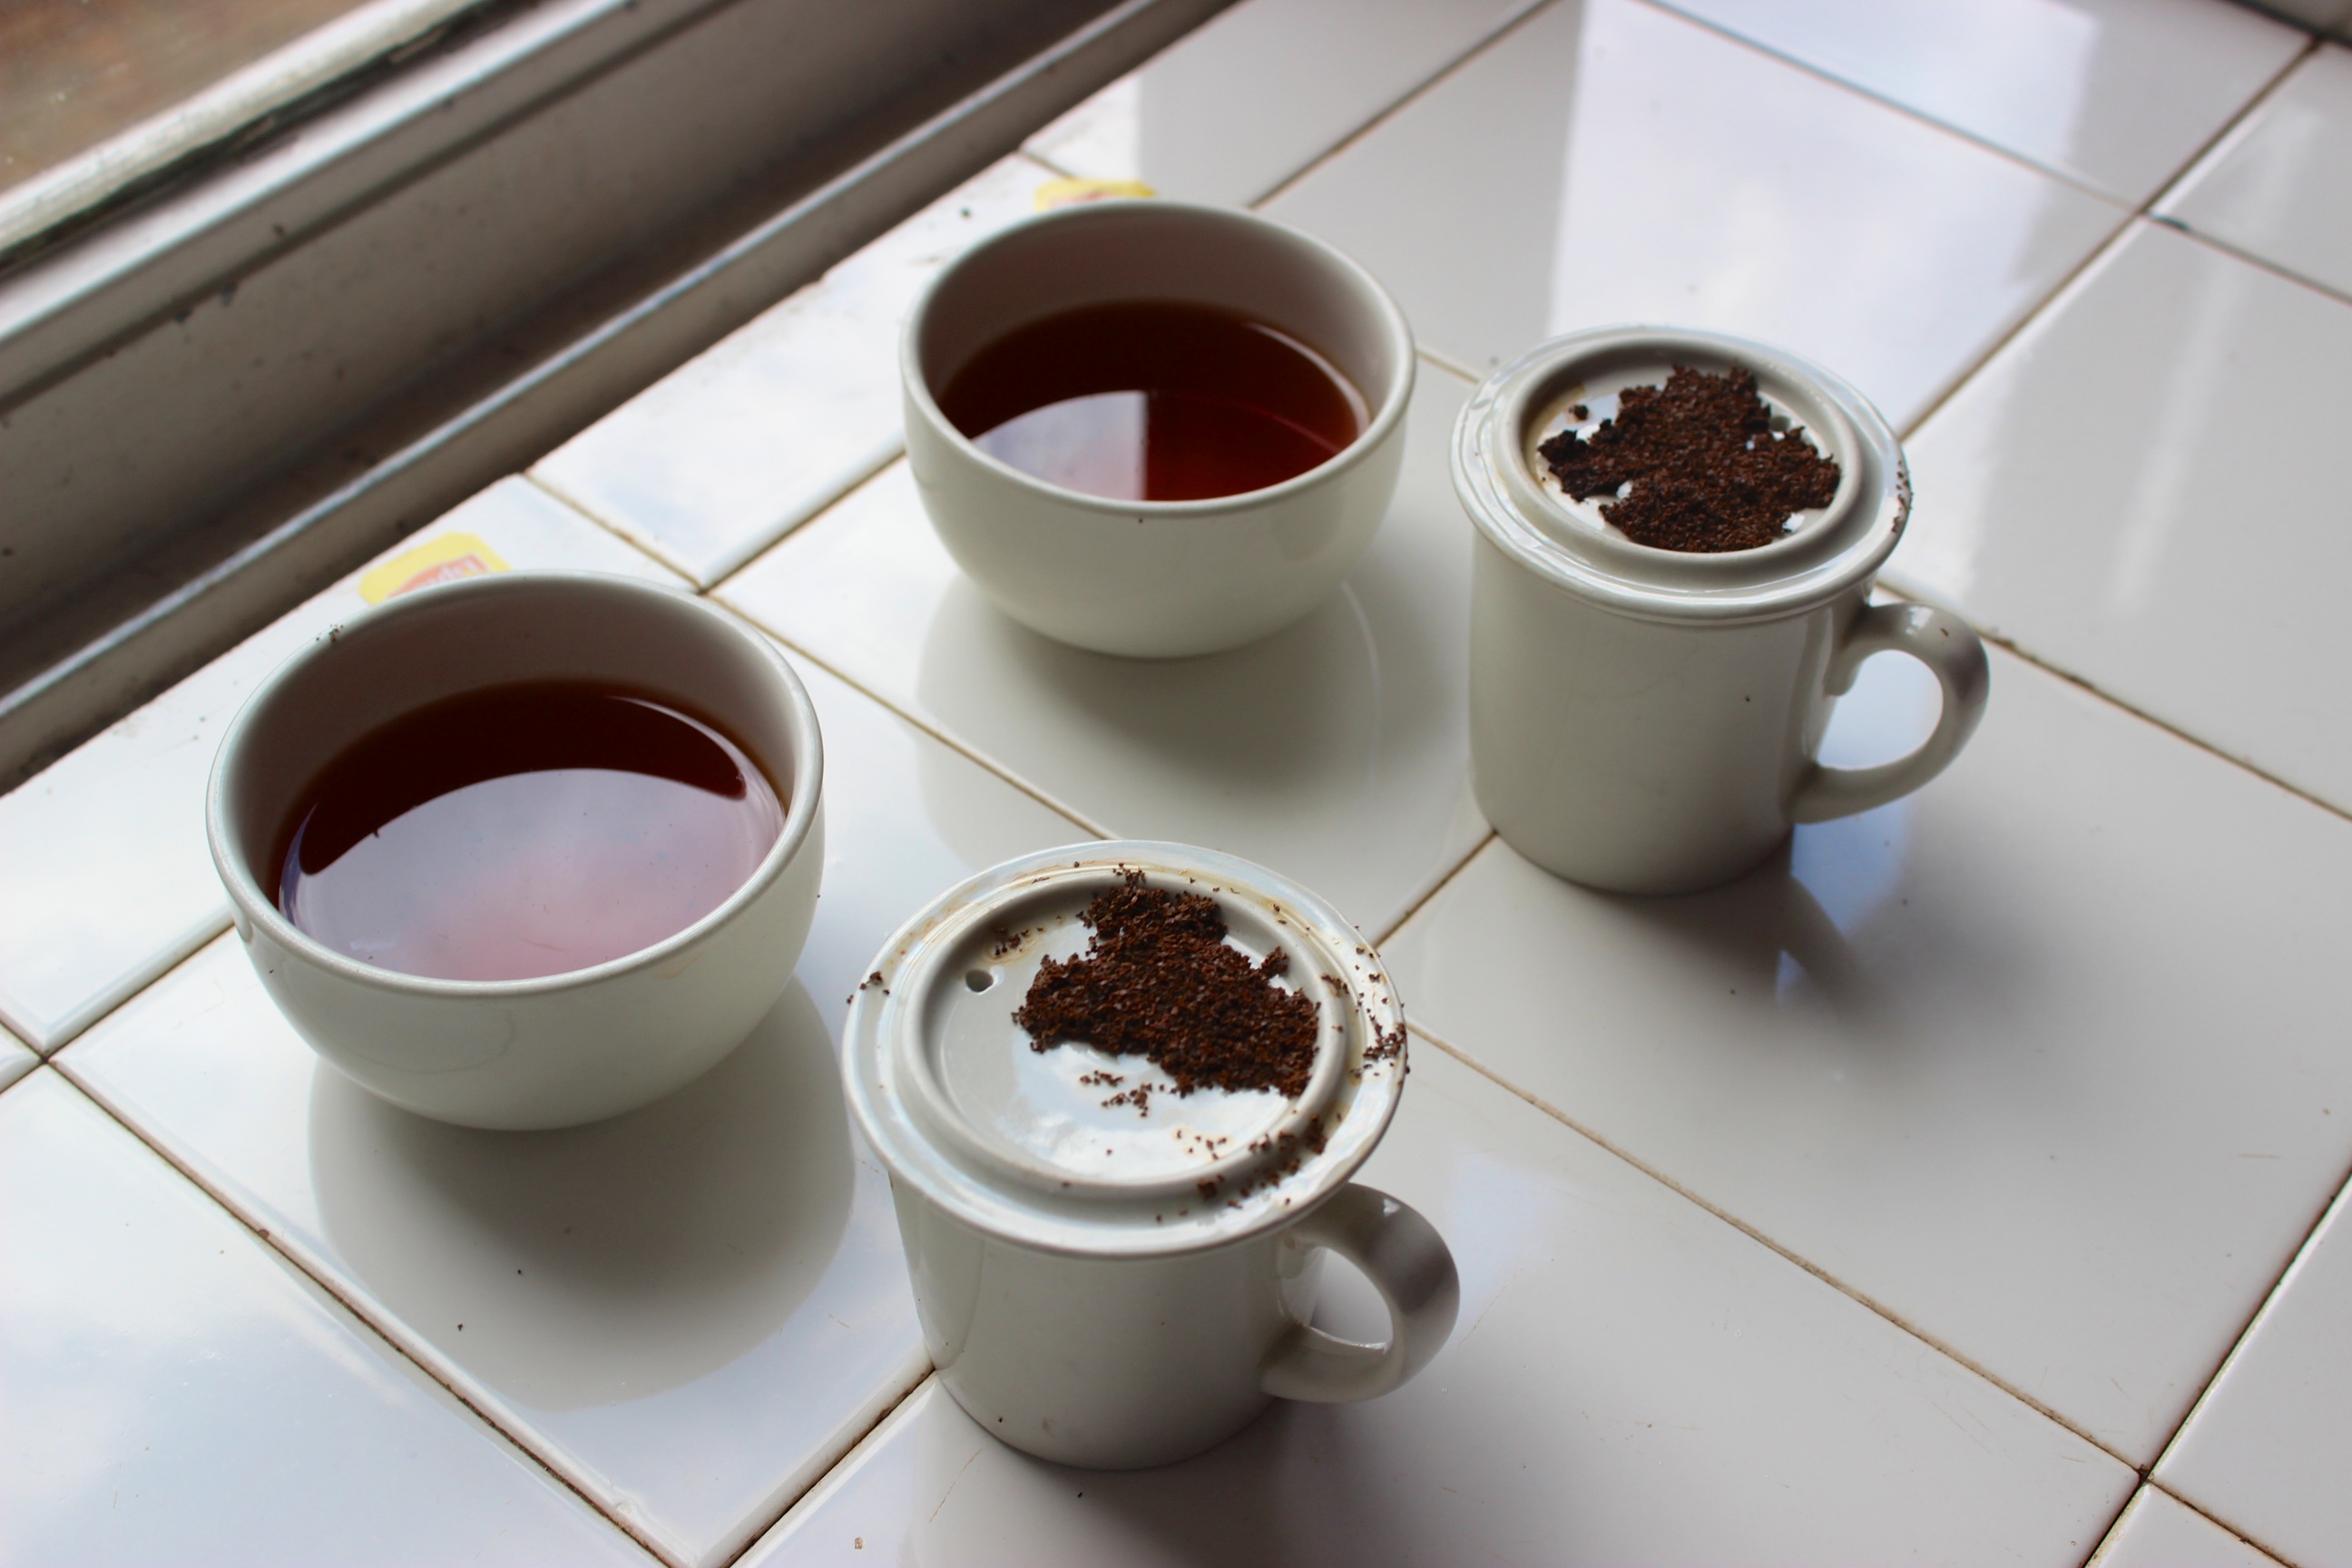 Norme ISO pour la préparation du thé : seriez-vous certifié ?